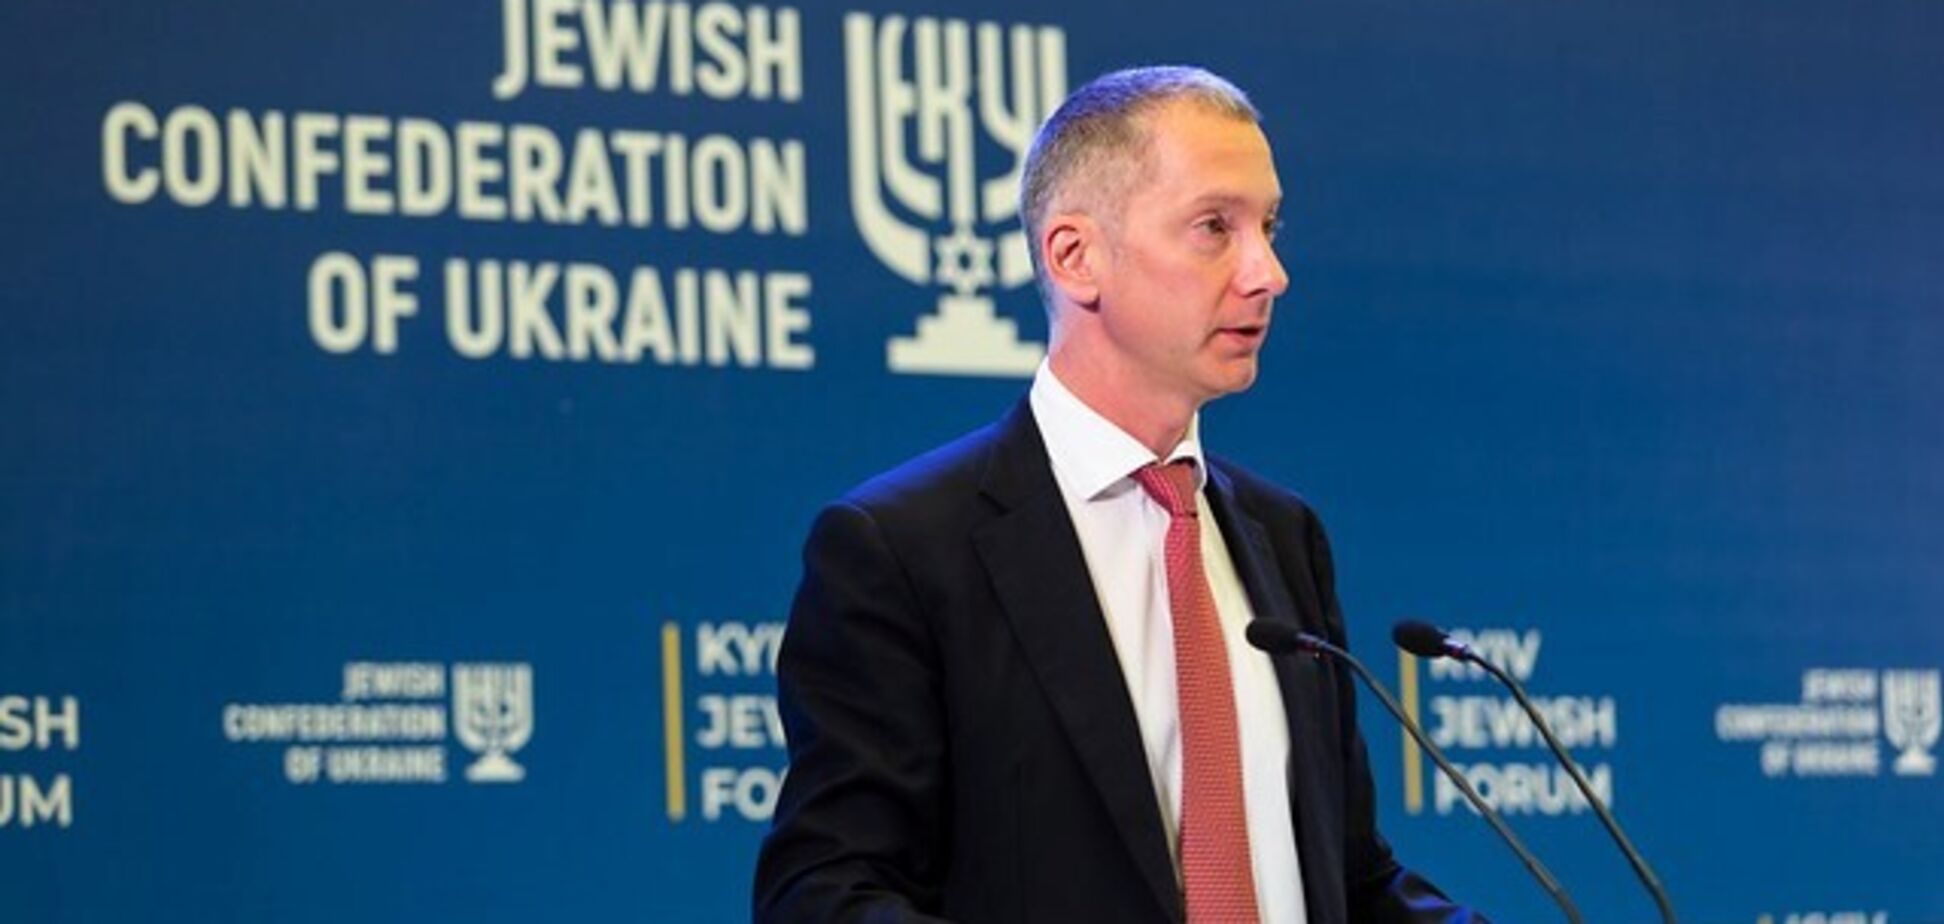 Третій Kyiv Jewish Forum збере світових лідерів 15-16 грудня – Борис Ложкін